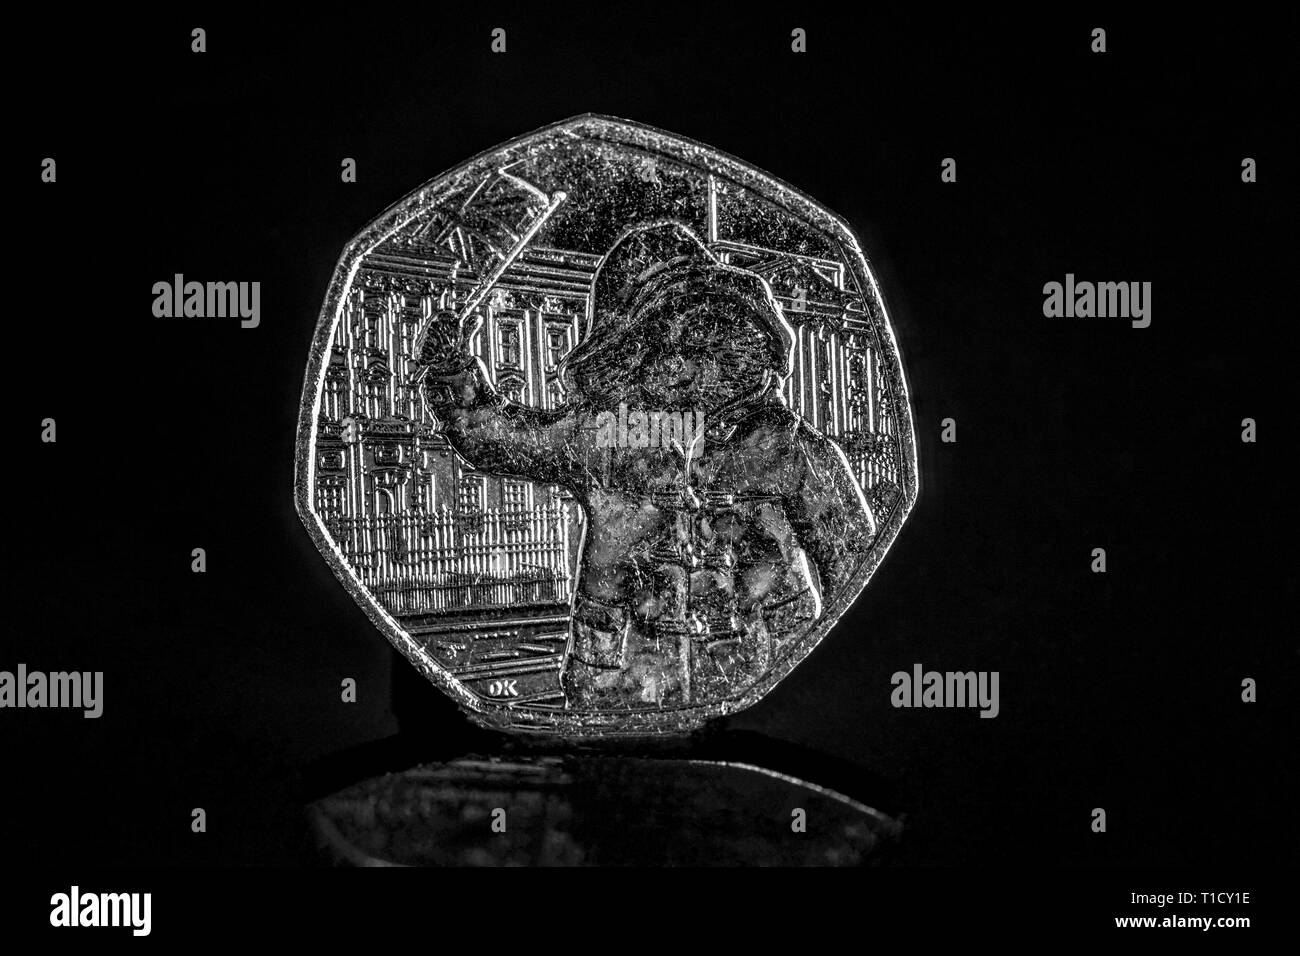 Close up of a UK's Paddington Grande Aventure Royale 50p / 50 pence coin célébrant 60 ans de l'ours Paddington 2018 Banque D'Images